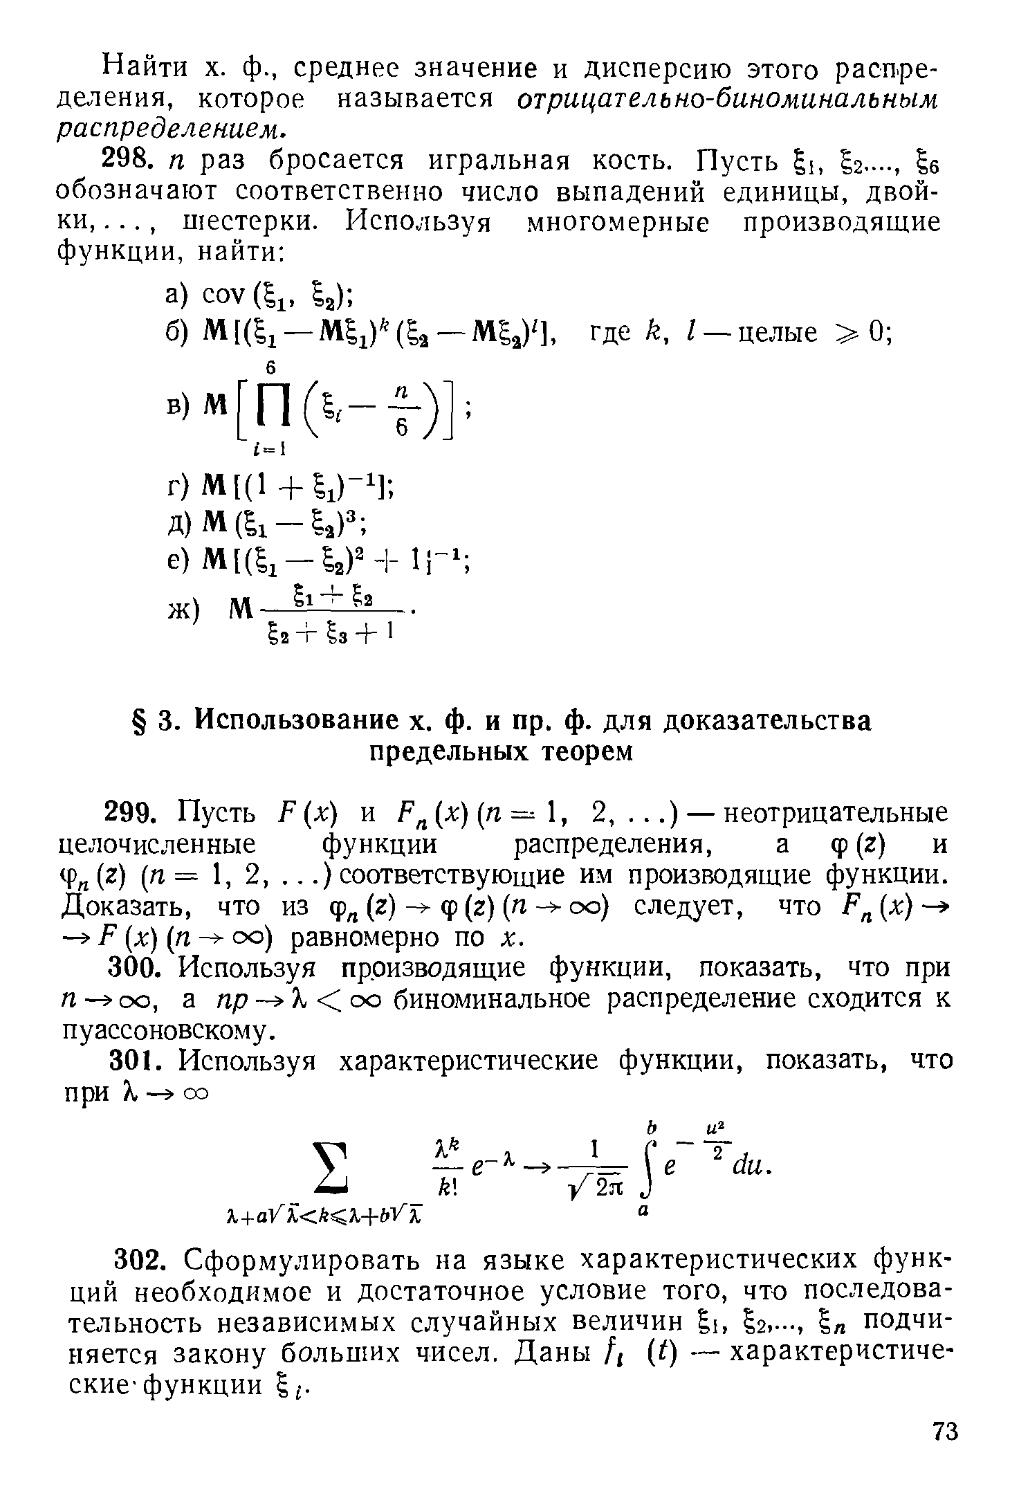 § 3. Использование х. ф. и пр. ф. для доказательства предельных теорем 299—309